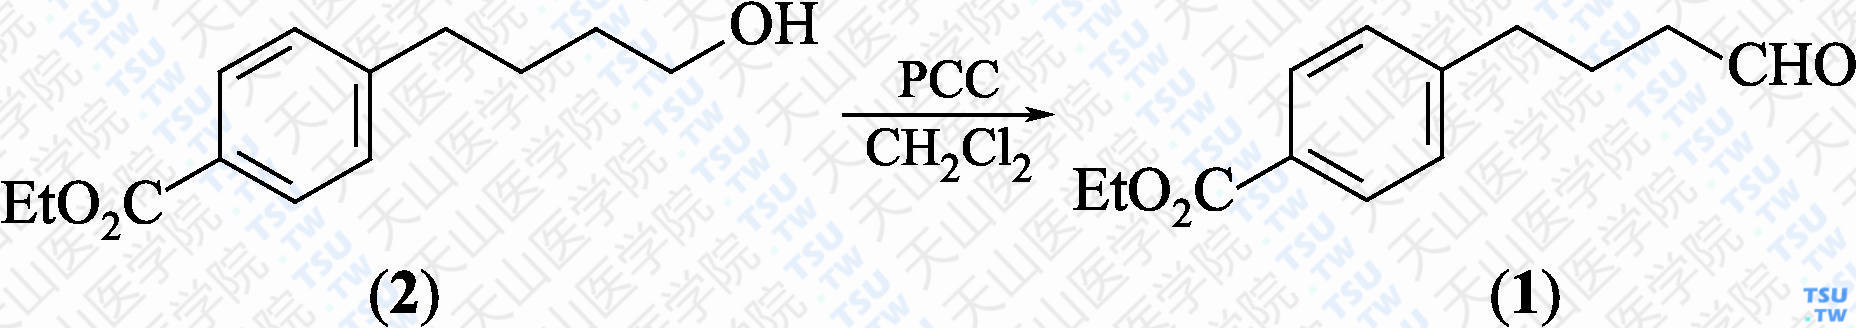 4-（4-氧代丁基）苯甲酸乙酯（分子式：C<sub>13</sub>H<sub>16</sub>O<sub>3</sub>）的合成方法路线及其结构式